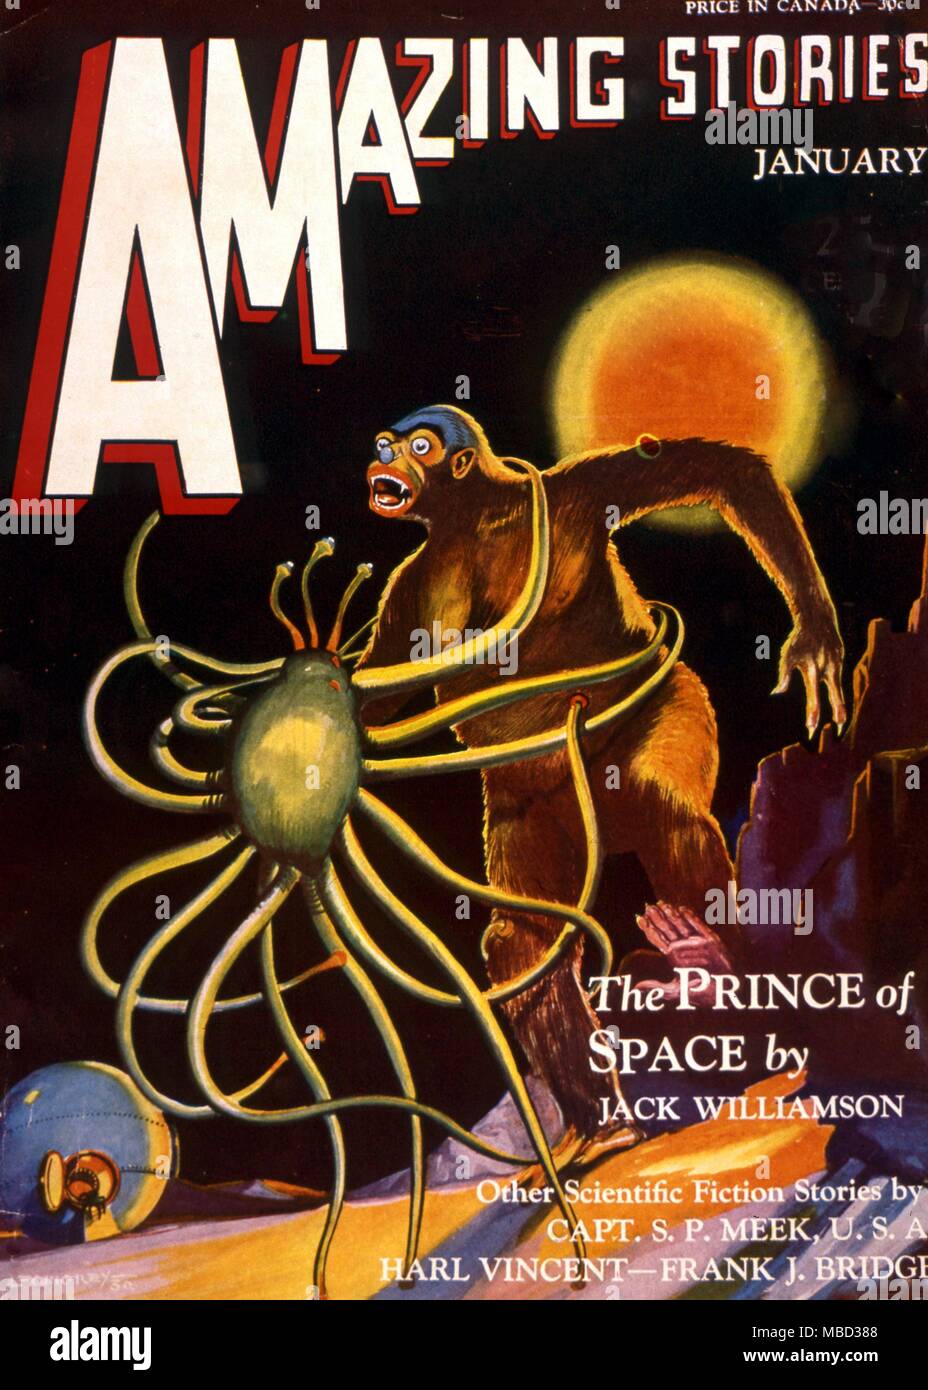 La science-fiction et d'horreur des magazines. Couverture de 'Amazing Stories", janvier 1931. Illustration pour une histoire de Jack Williamson Banque D'Images